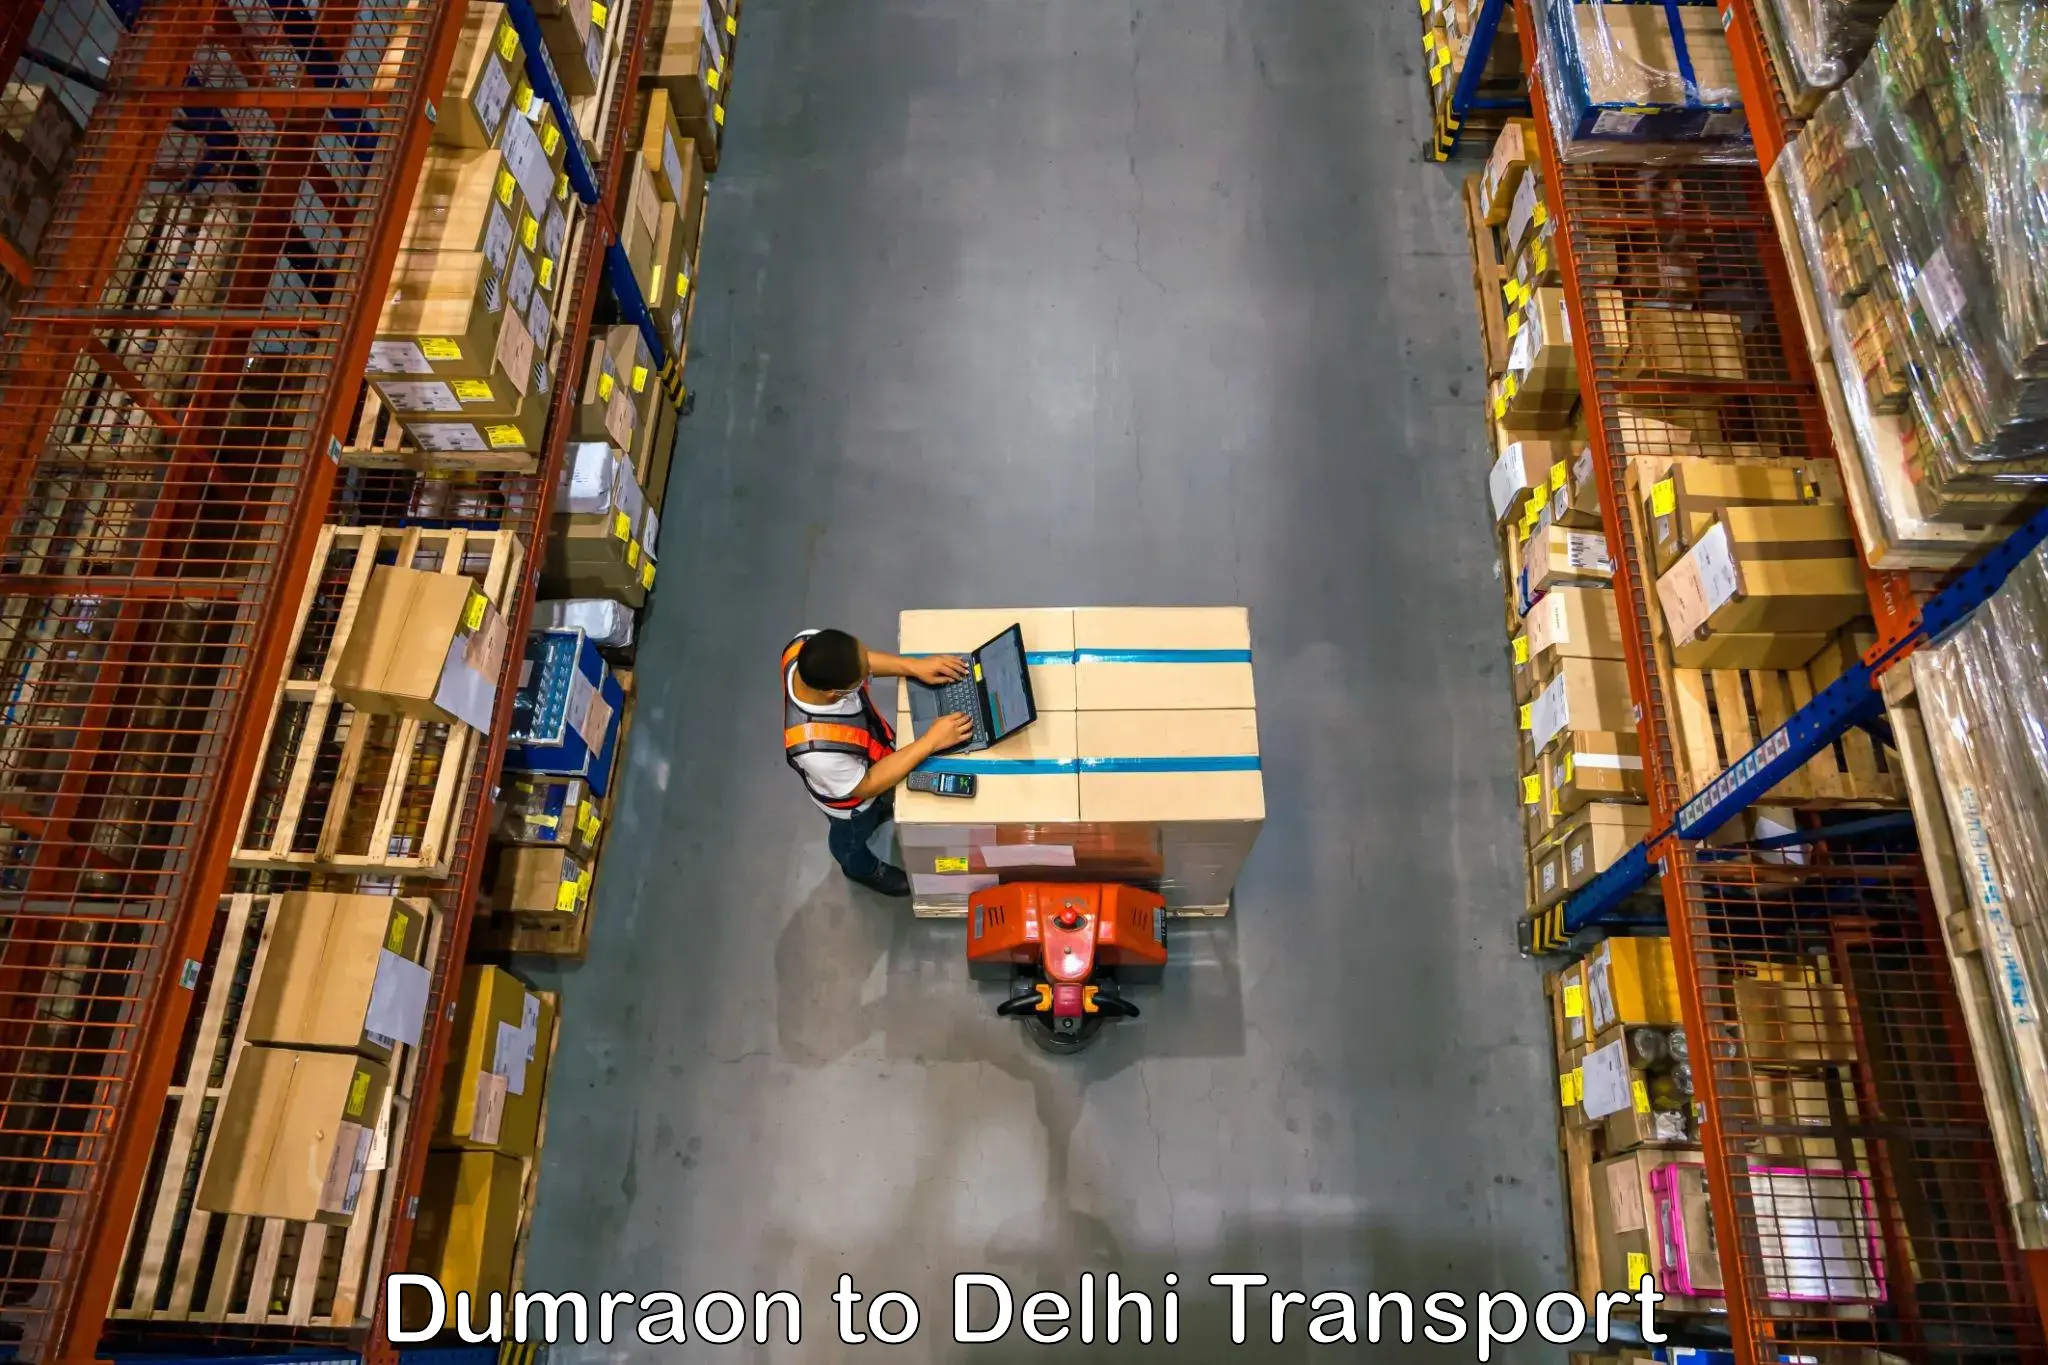 Bike transport service Dumraon to Delhi